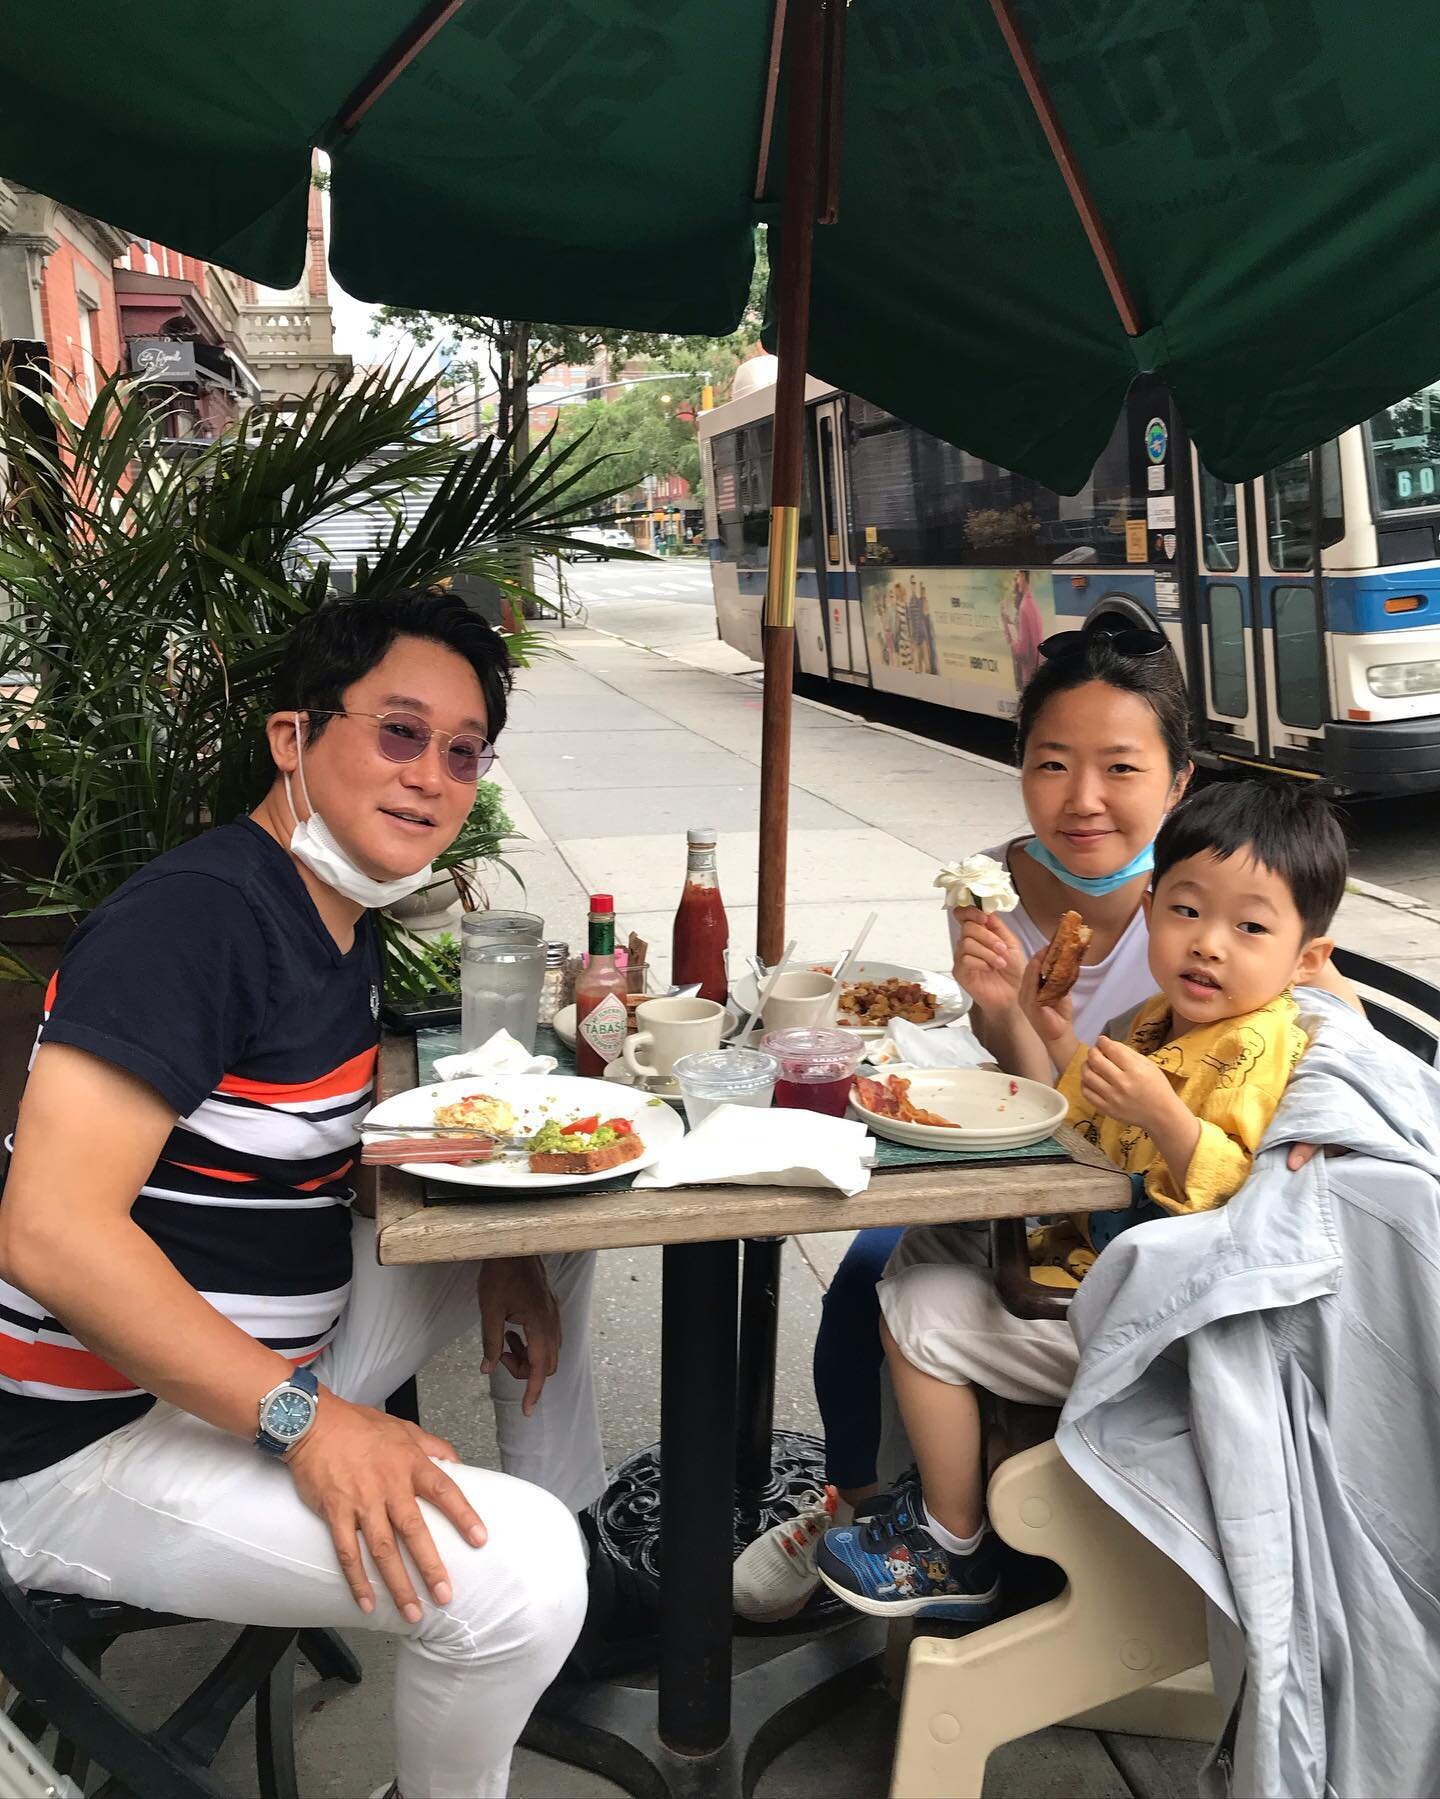 Soho&rsquo;s smile made our day ❤️@busstopcafenyc #WhereHudsonMeetsBethune
.
.
#sunday #sundayfunday #familytime #breakfast #breakfasttime #creatememories #nyc #manhattan #newyorkcity  #westvillage #westvillageeats #i❤️ny